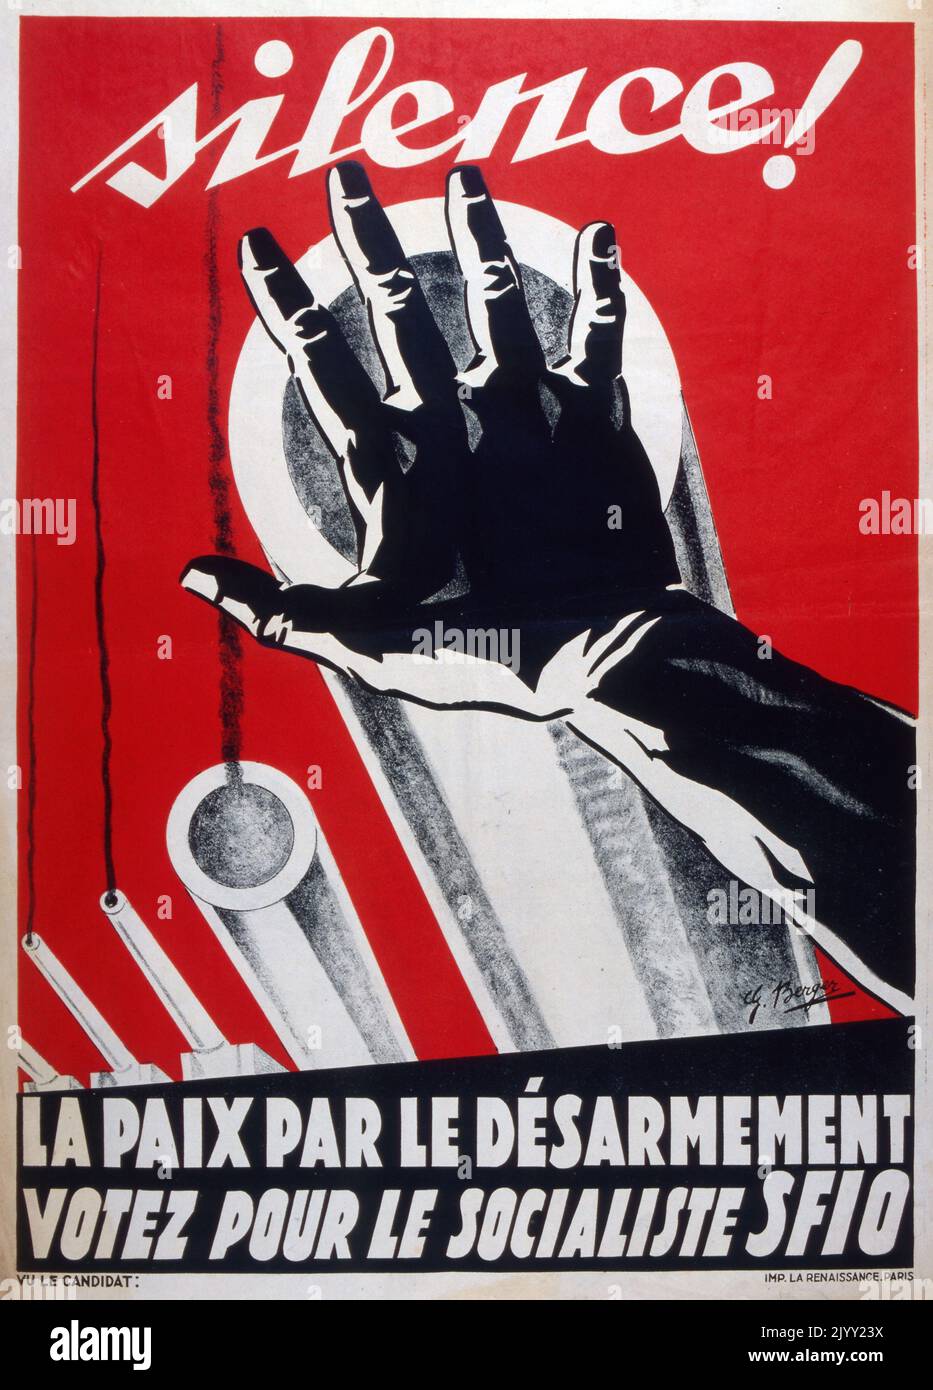 Affiche de propagande politique de Berger, pour le Parti socialiste français lors des élections législatives de 1932. Le slogan se lit comme suit : silence! la paix par le désarment (Silence ! la paix par le désarmement). Banque D'Images